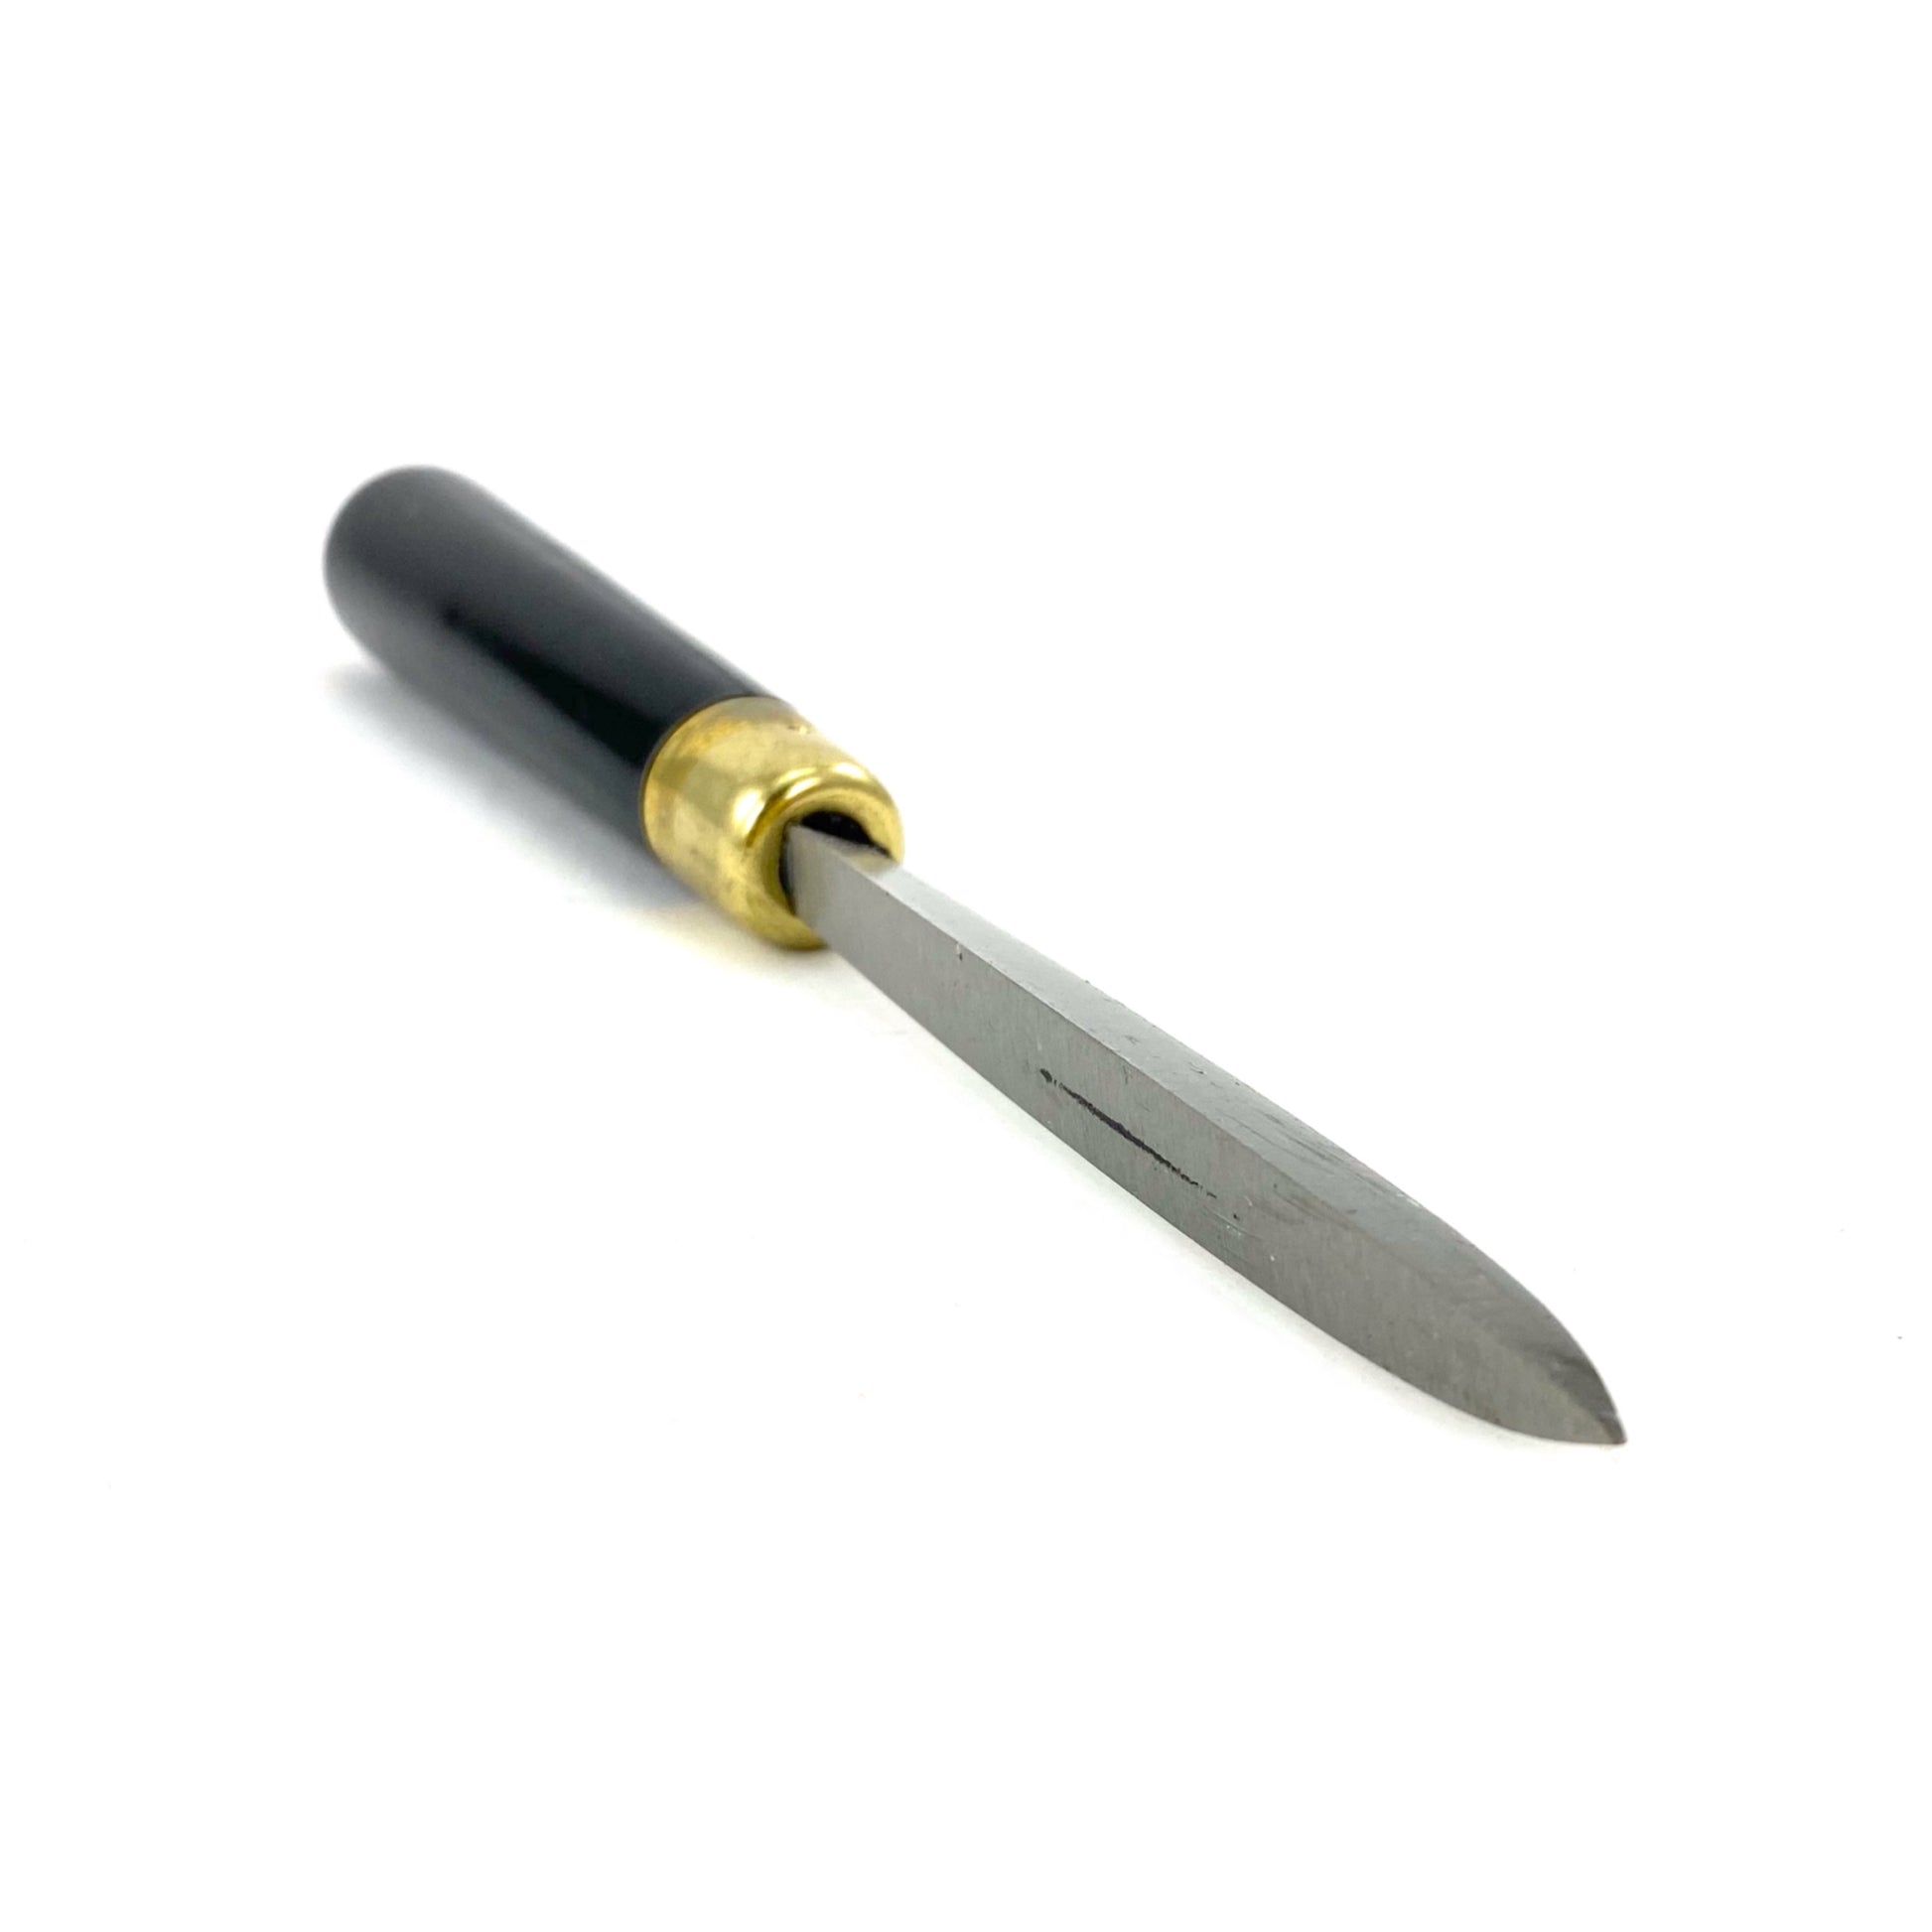 RGM Etching Tool, Scraper, #602 Tip